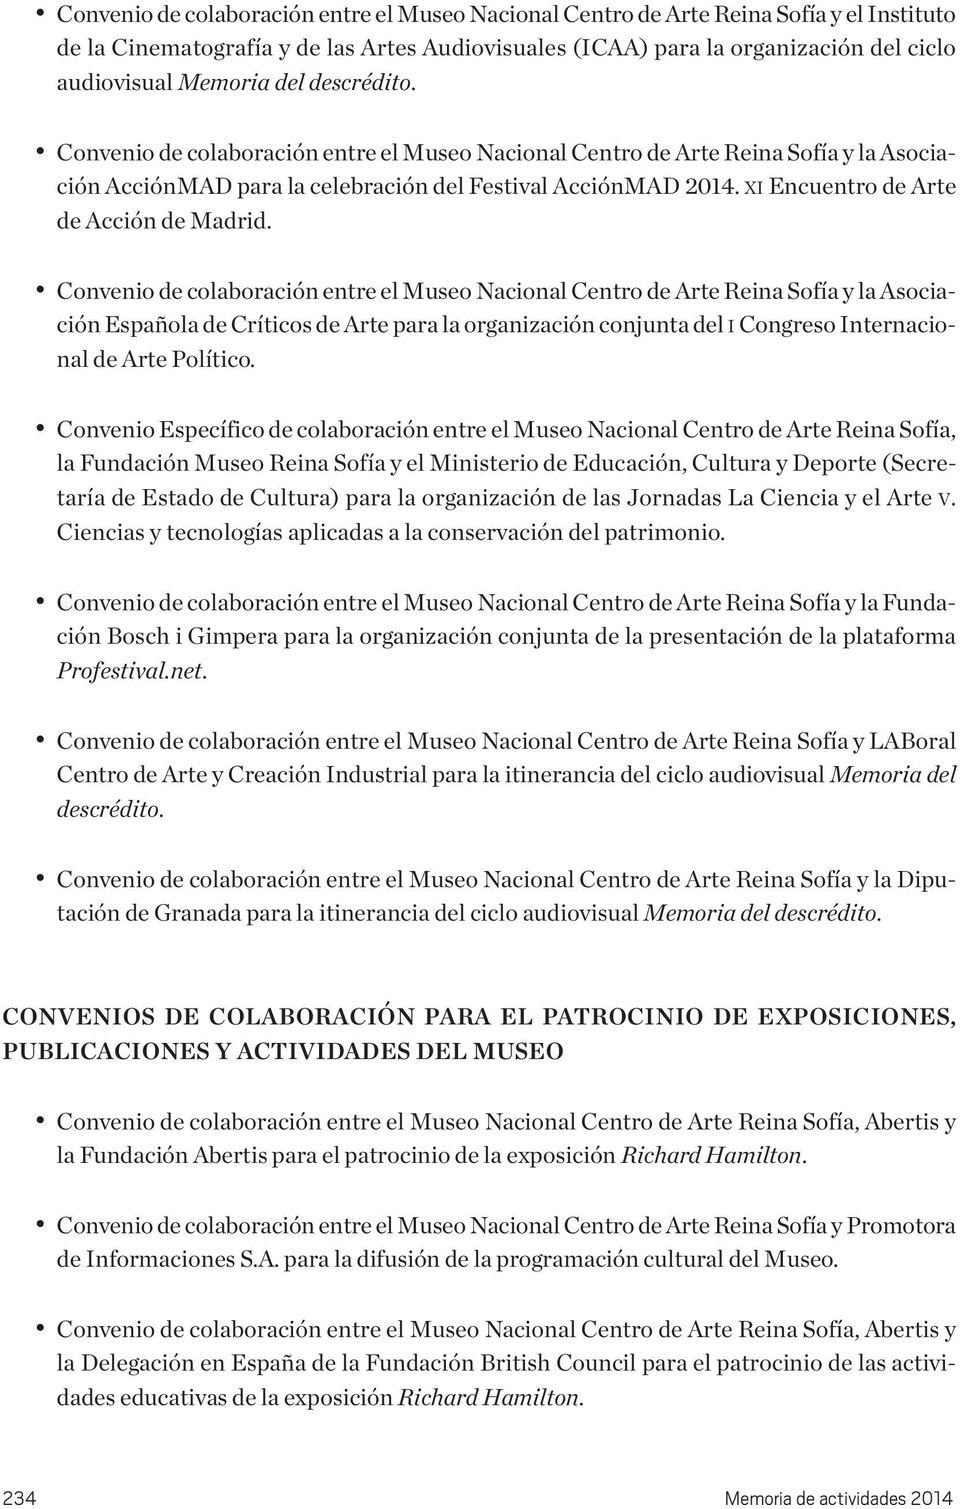 Convenio de coaboración entre e Museo Naciona Centro de Arte Reina Sofía y a Asociación Españoa de Críticos de Arte para a organización conjunta de I Congreso Internaciona de Arte Poítico.